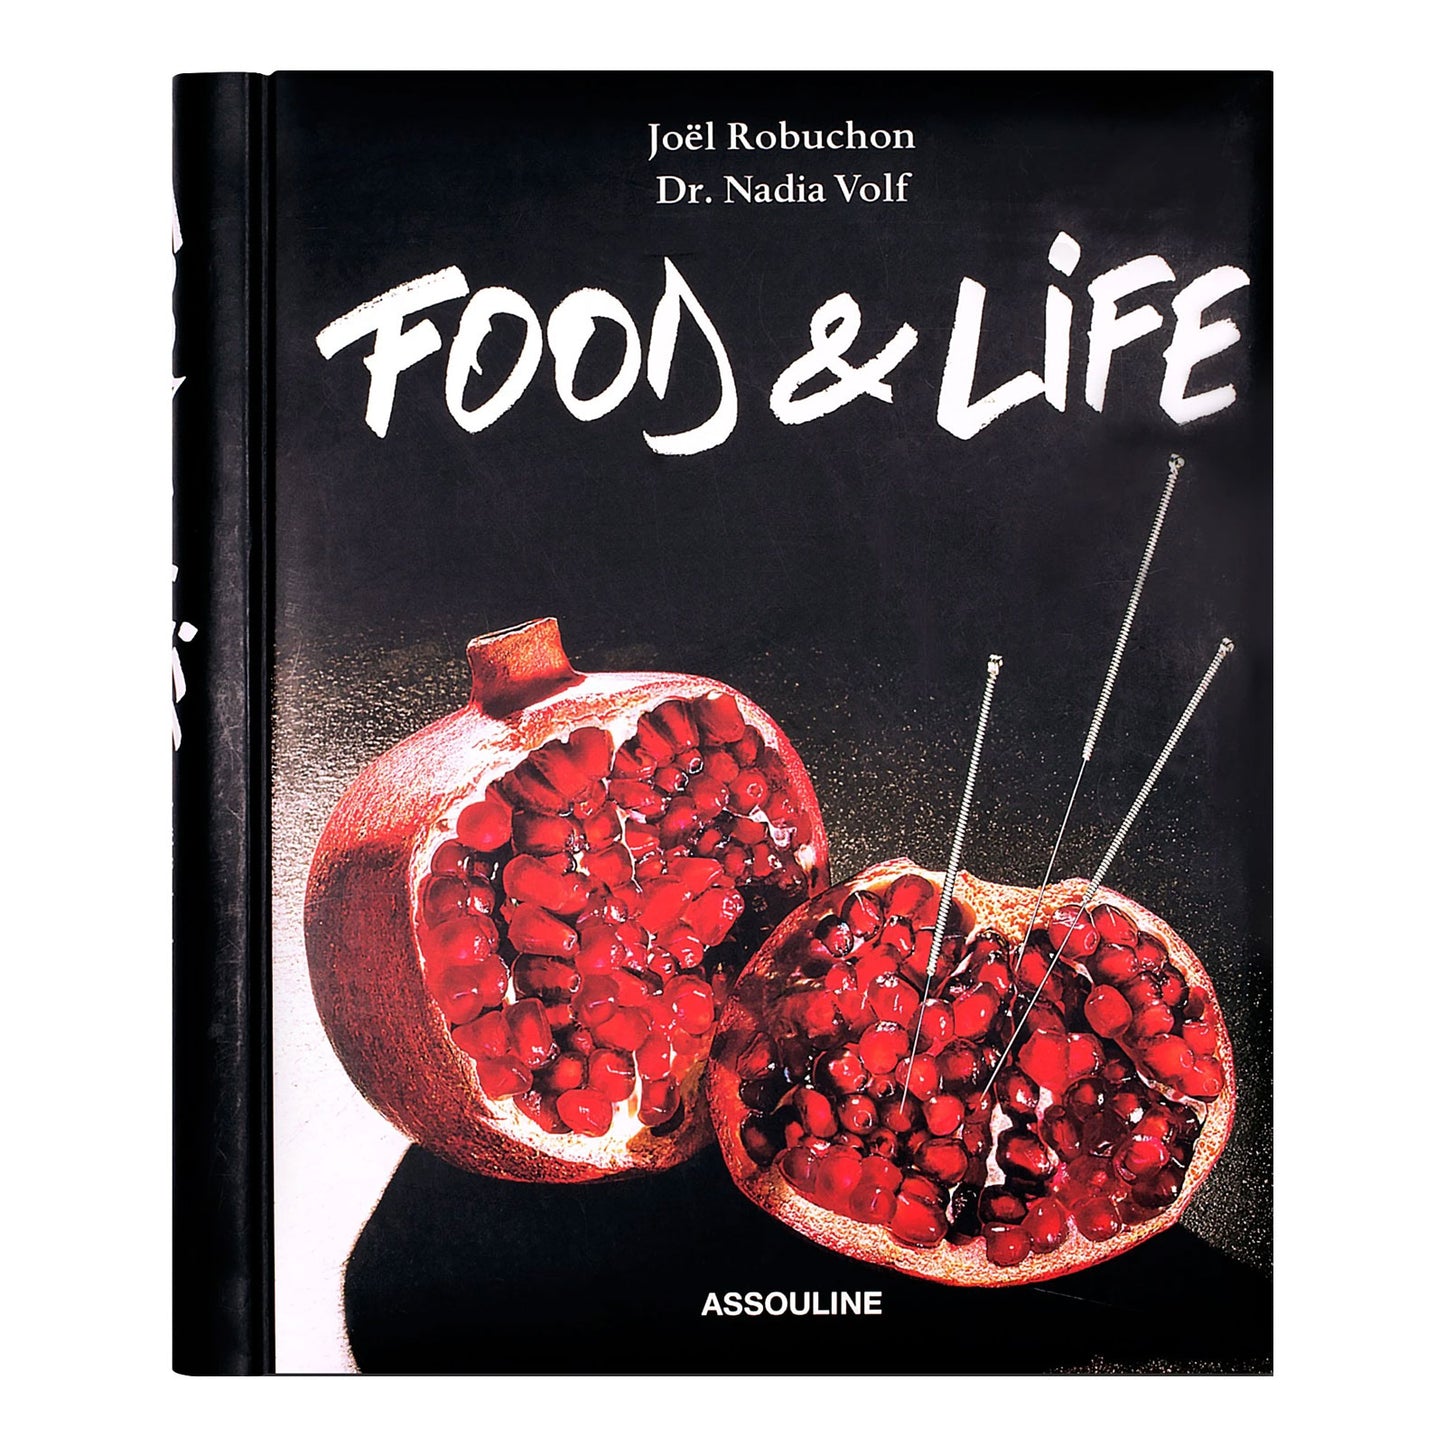 Food & Life by Joël Robuchon